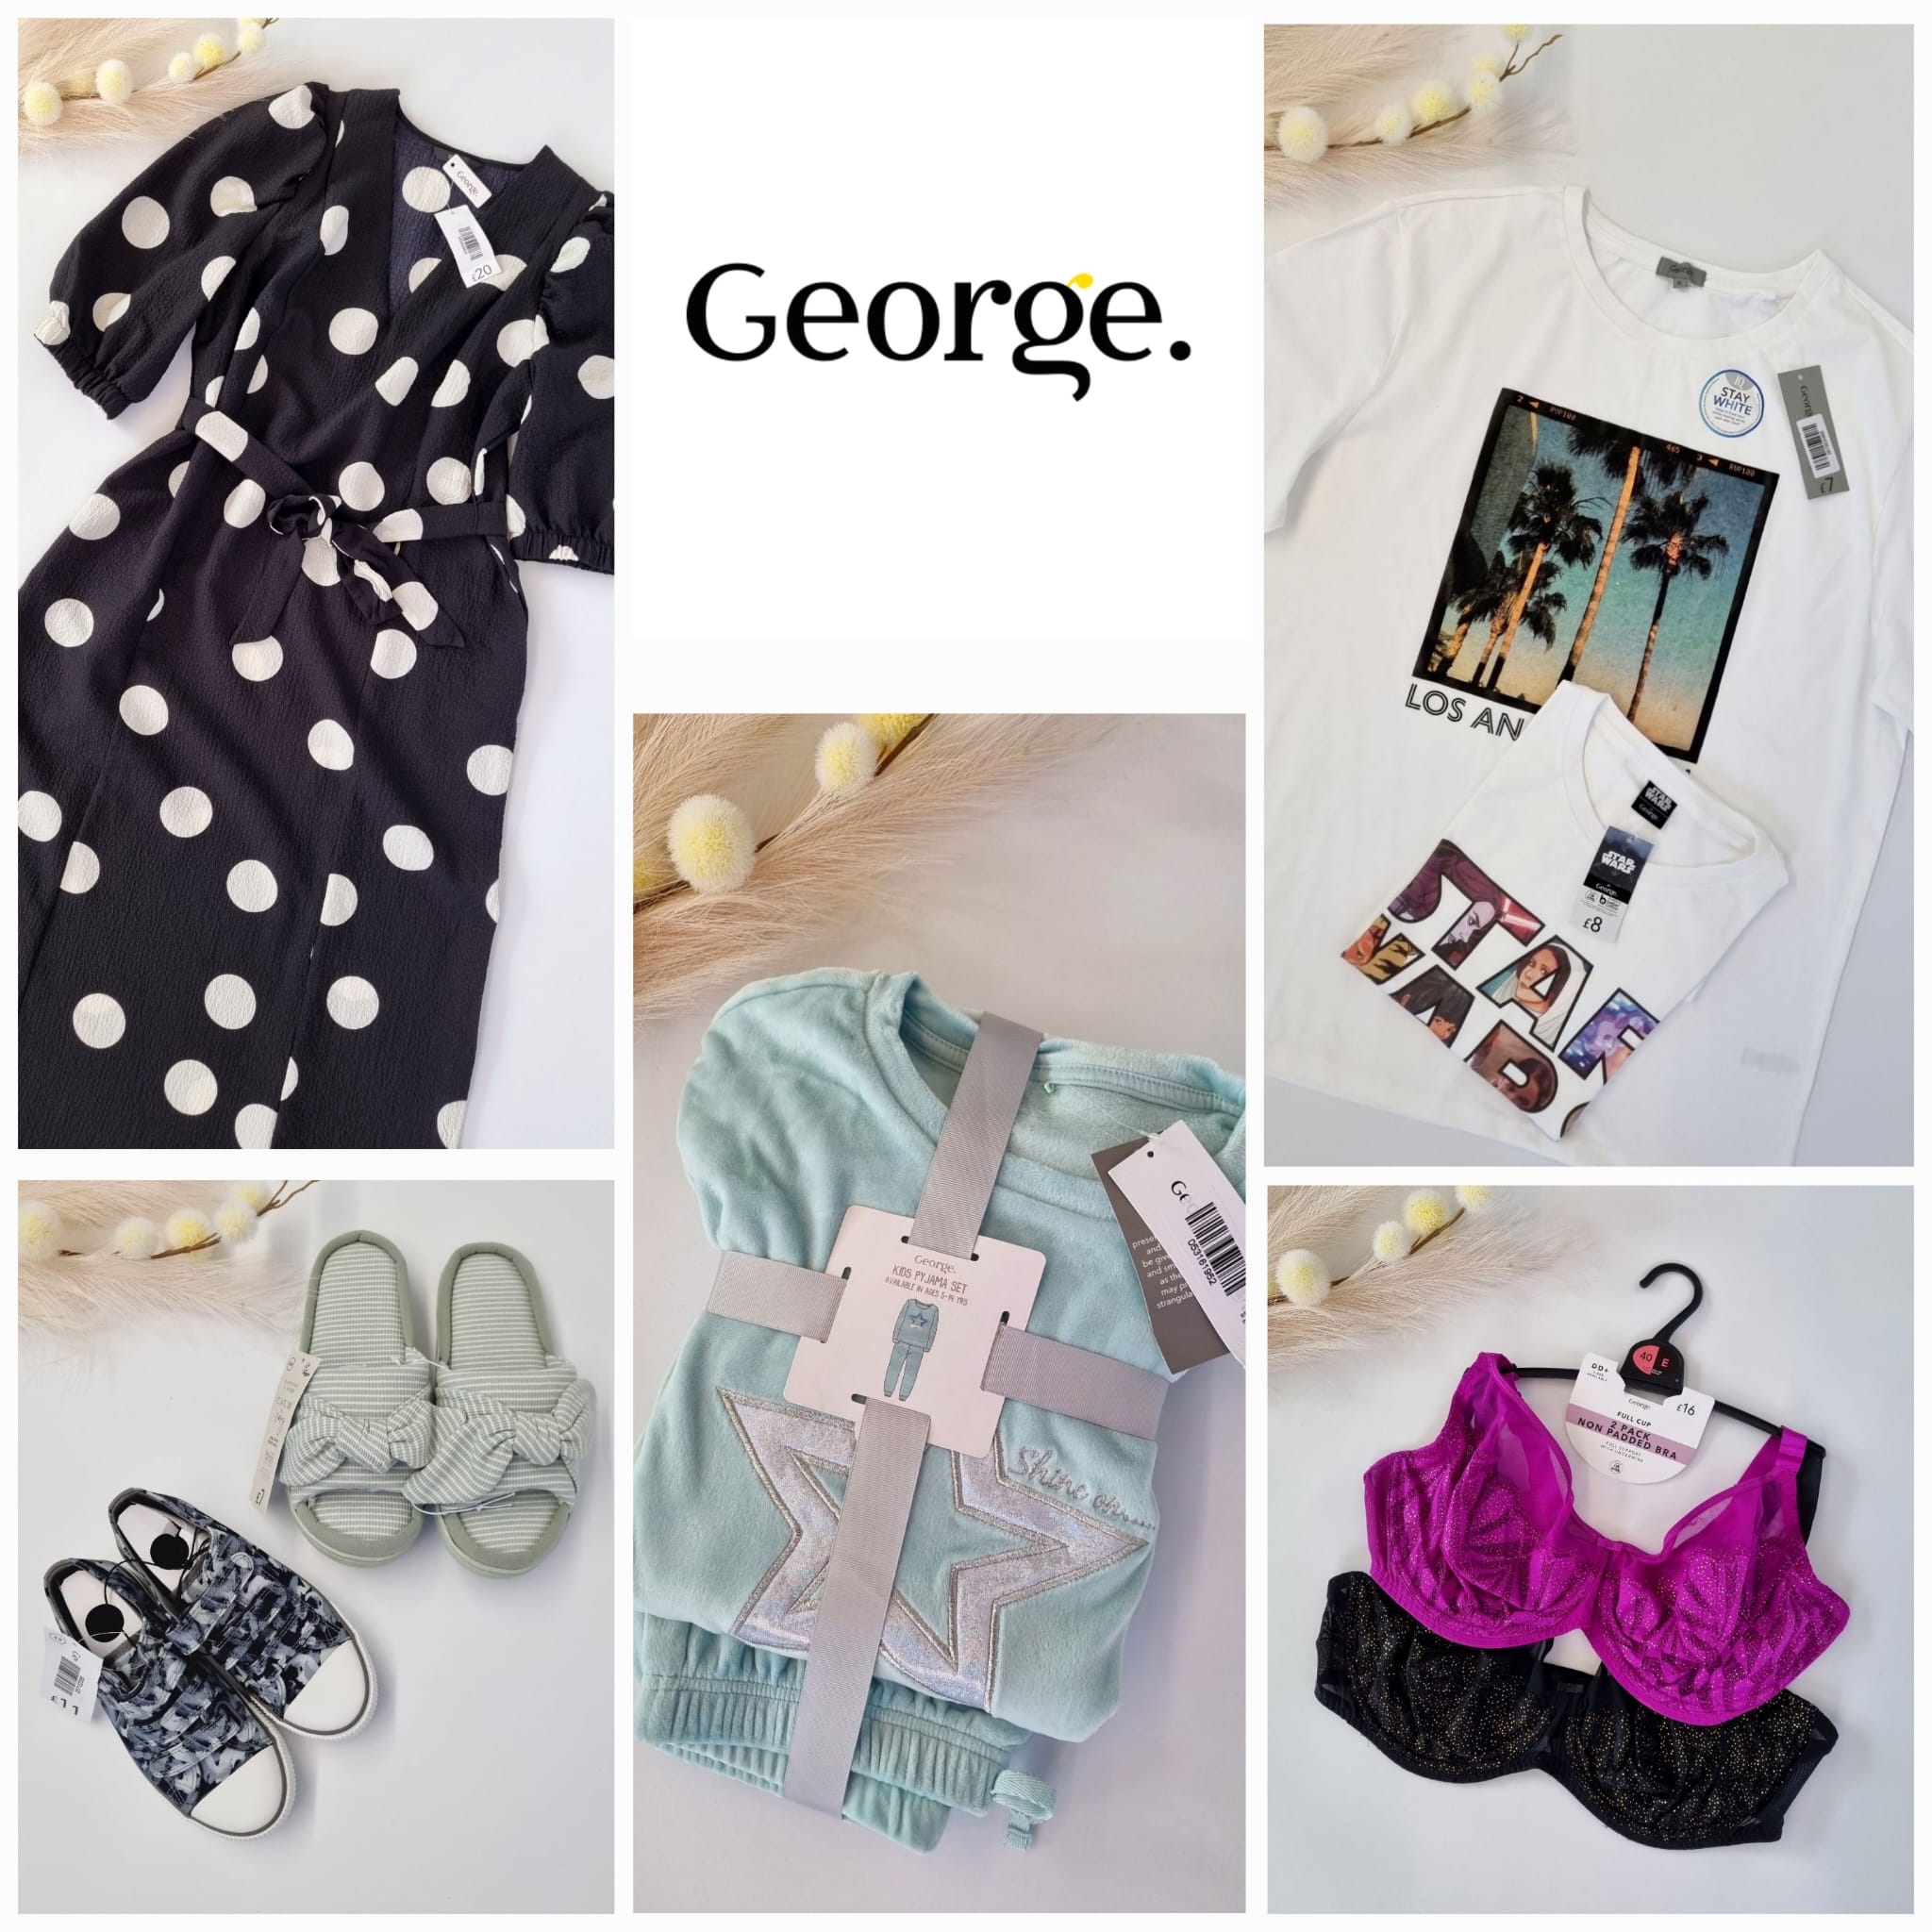 Микс одежды и аксессуаров от George